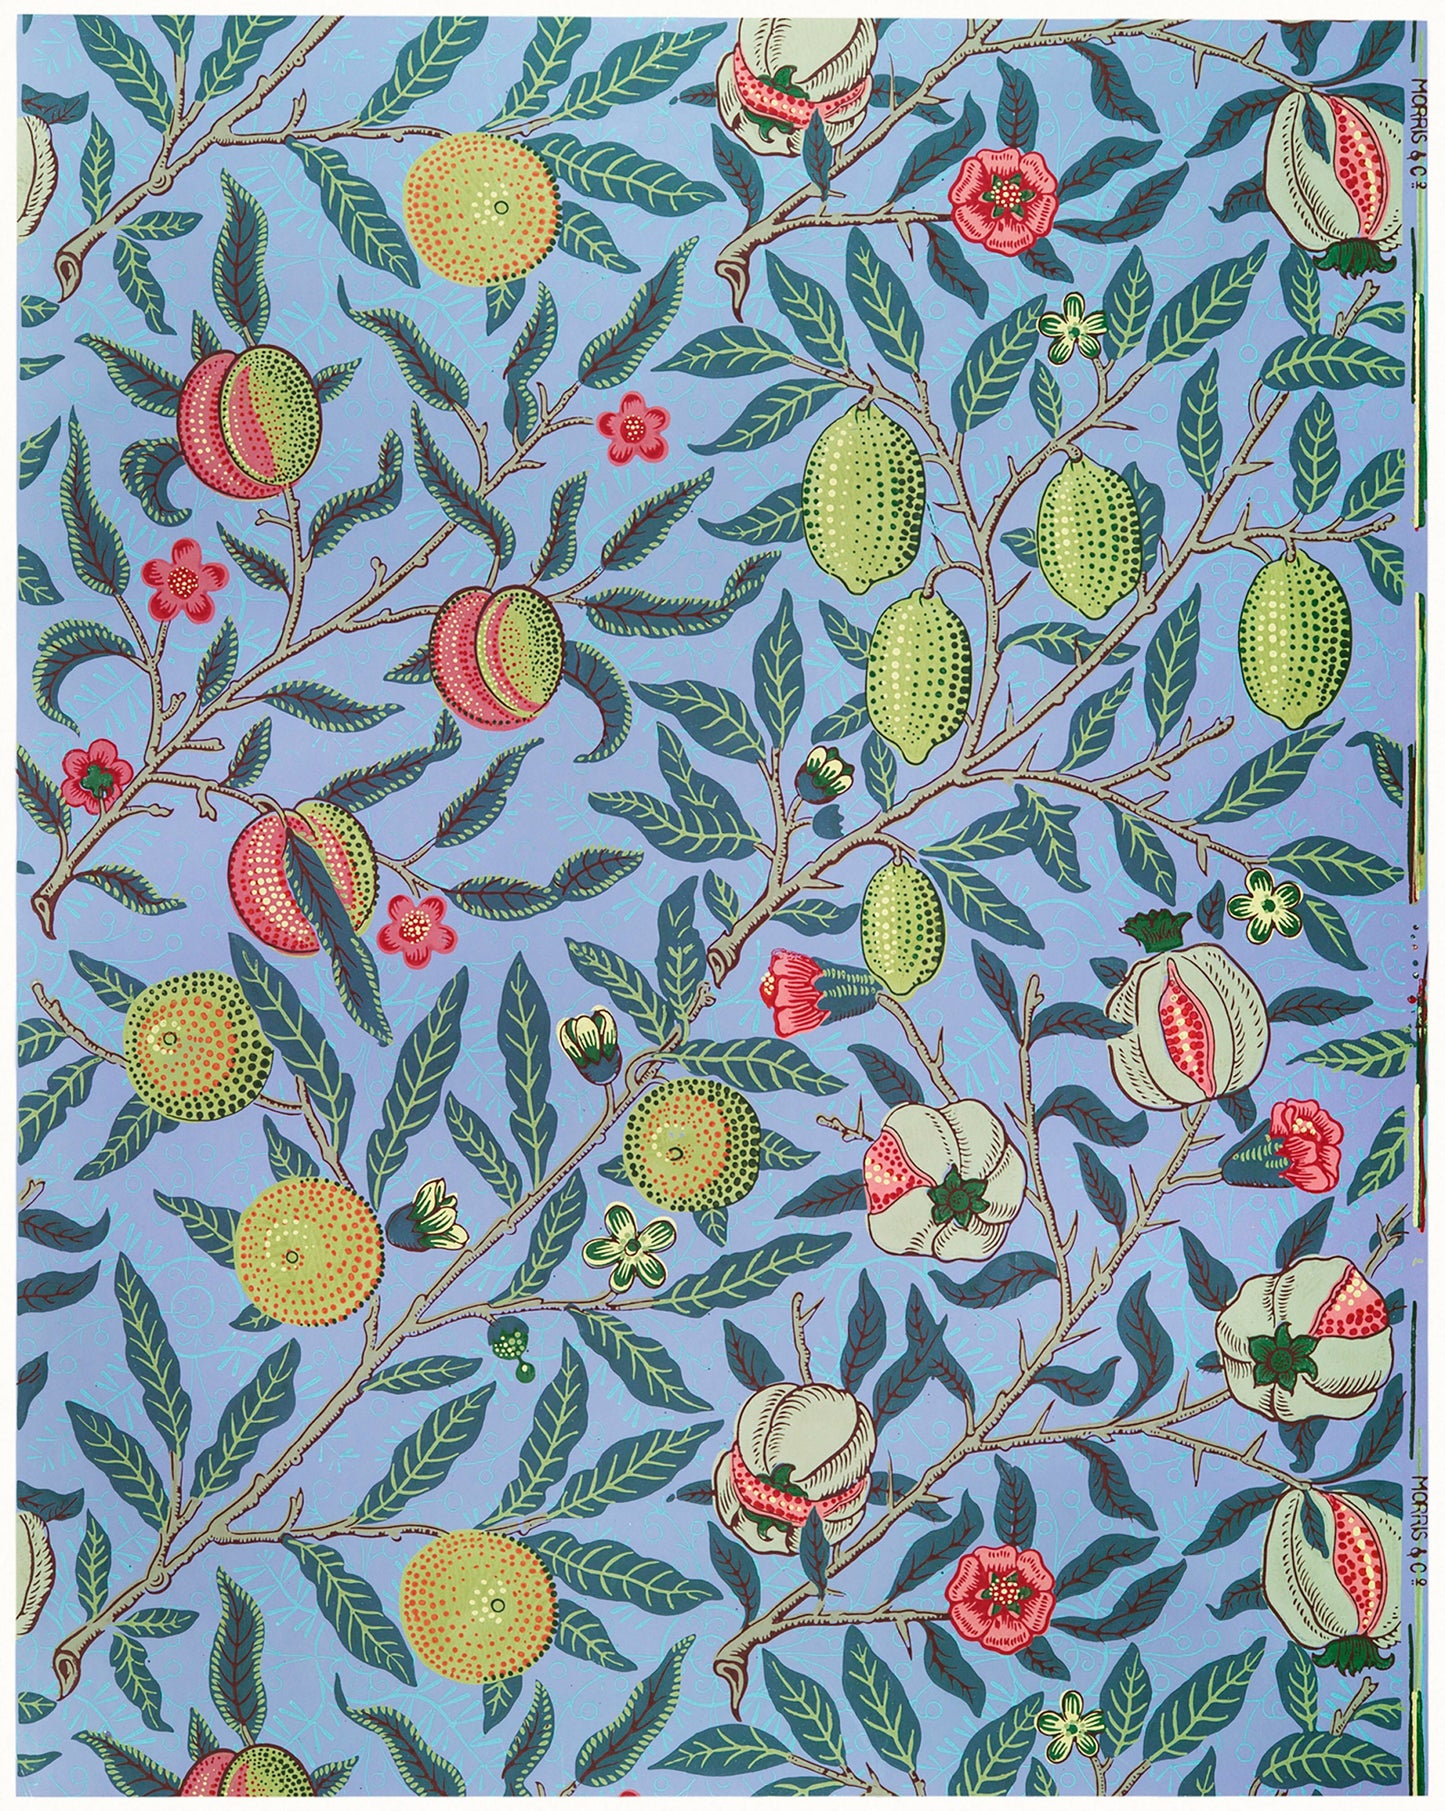 William Morris Design Pattern Set 1 [22 Images]